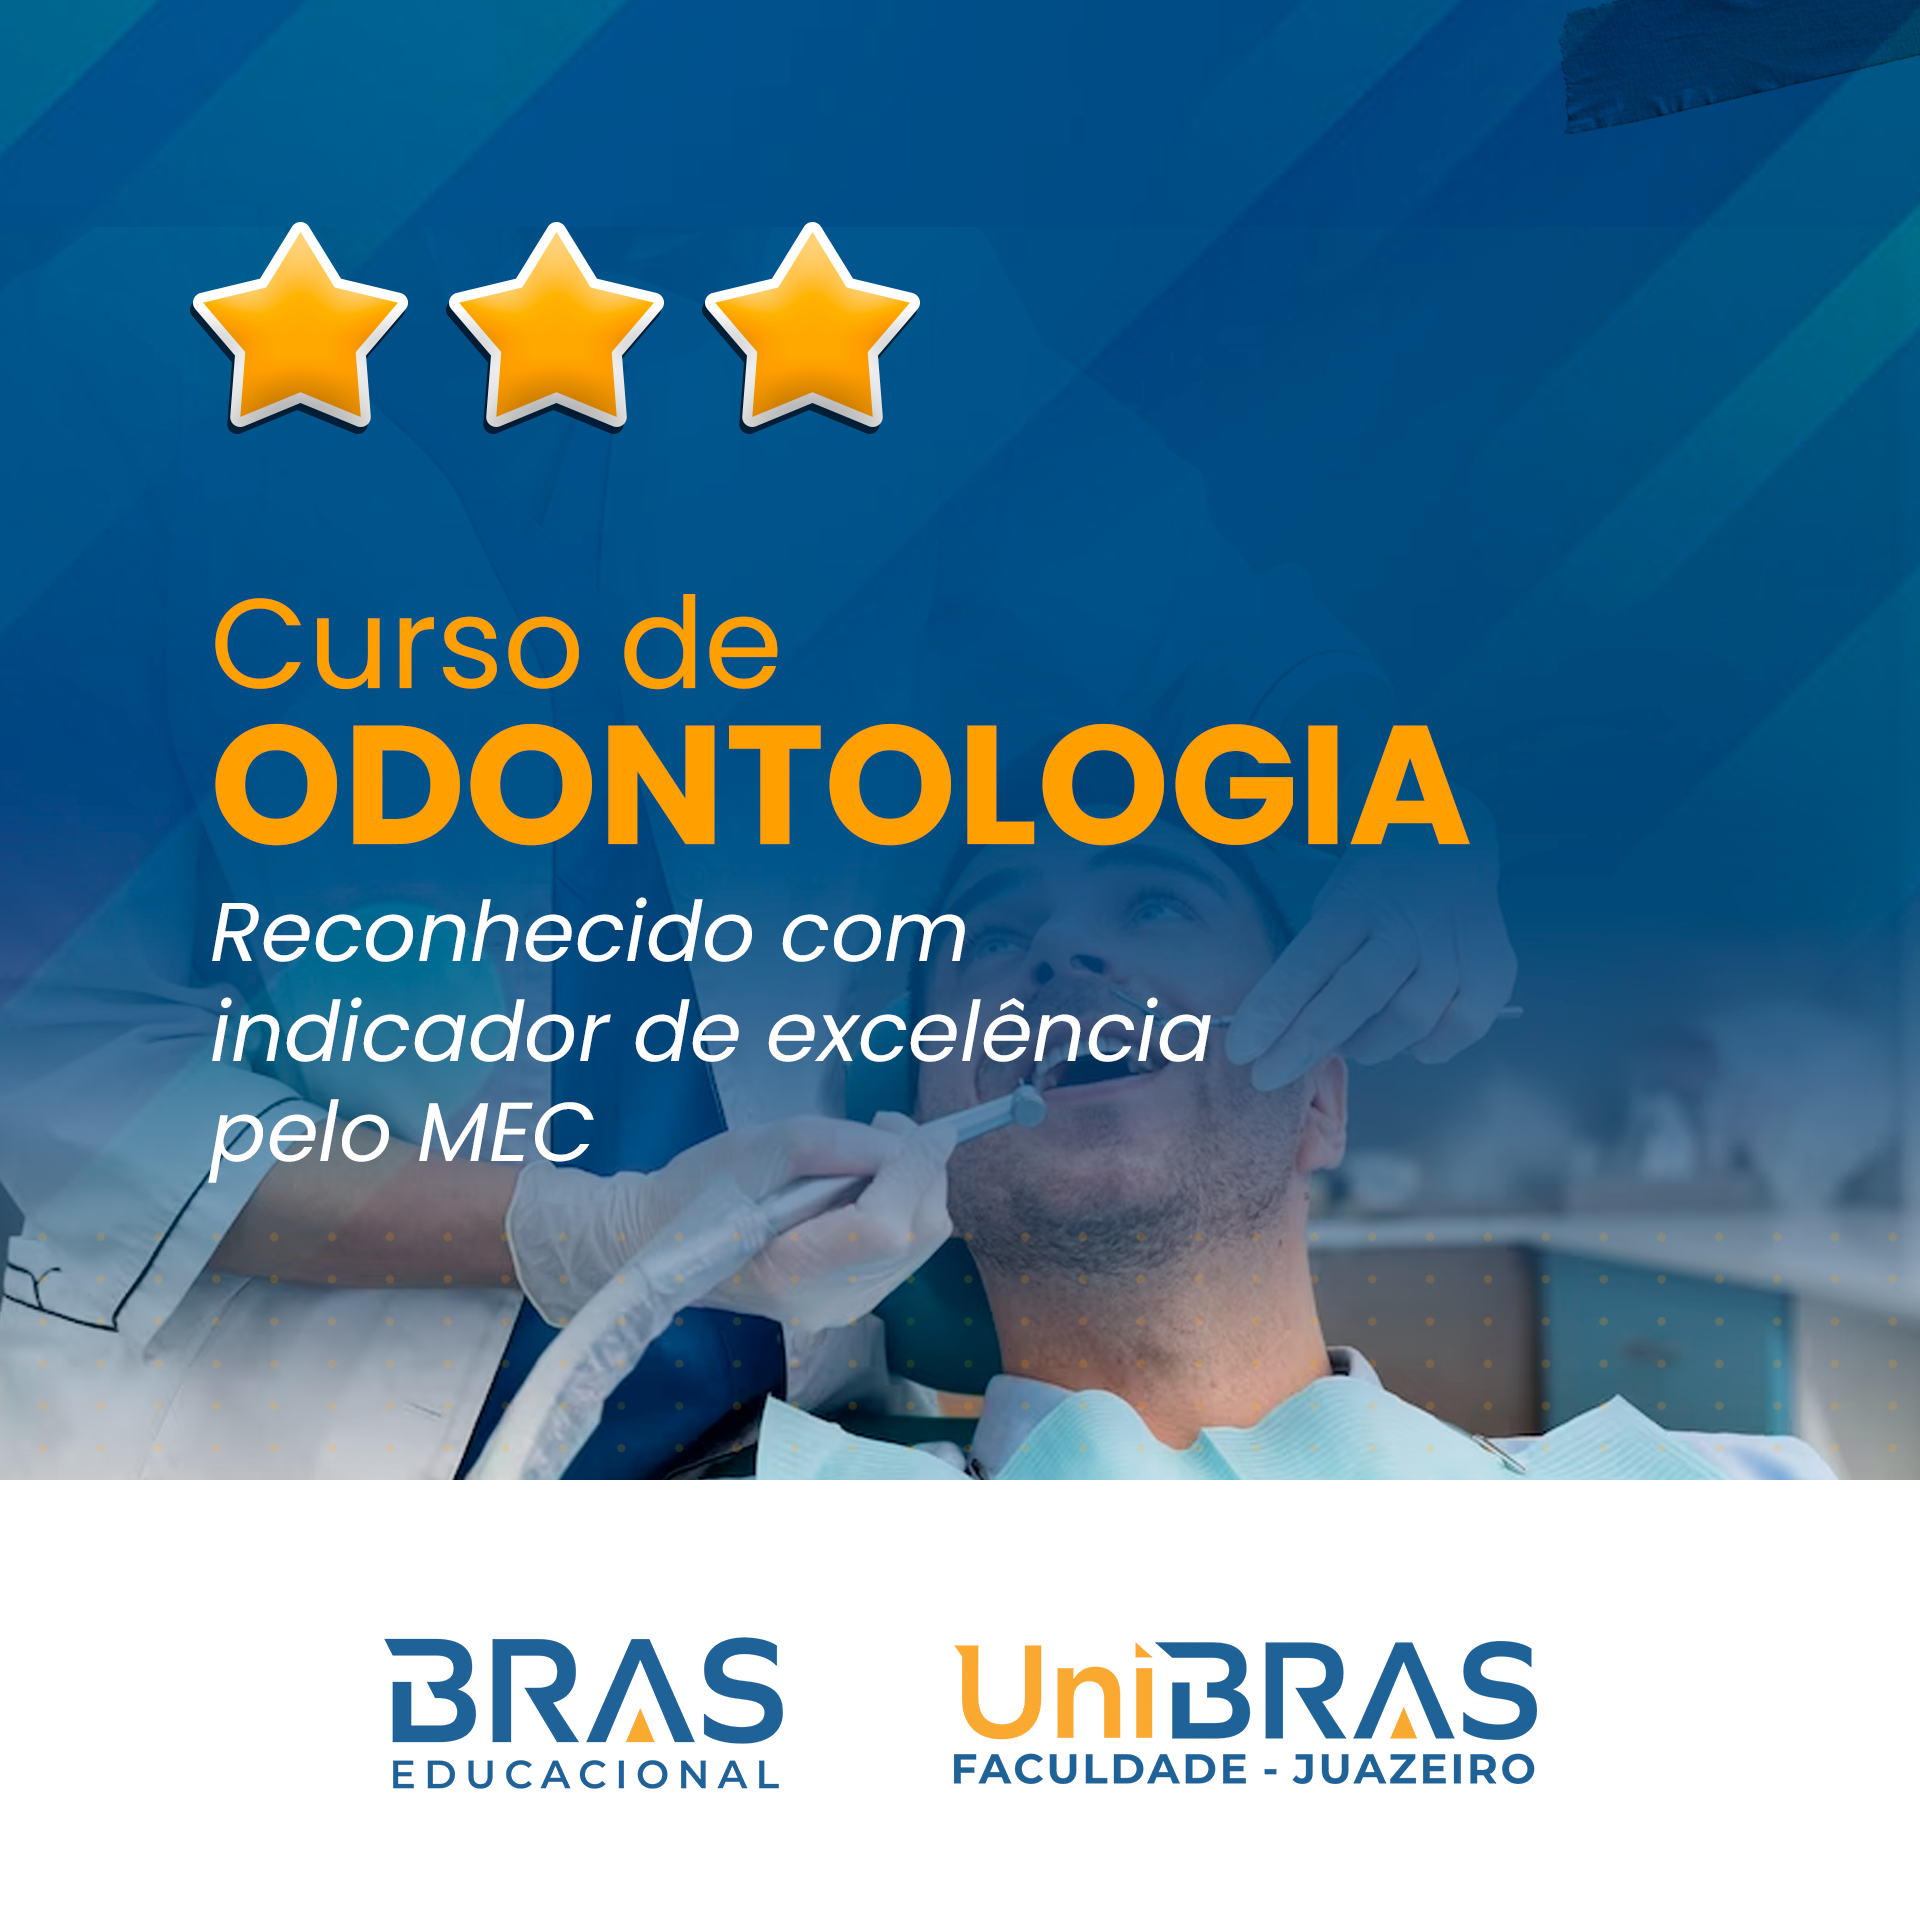 Curso de Odontologia da Faculdade UniBRAS Juazeiro é reconhecido com indicador de excelência pelo MEC